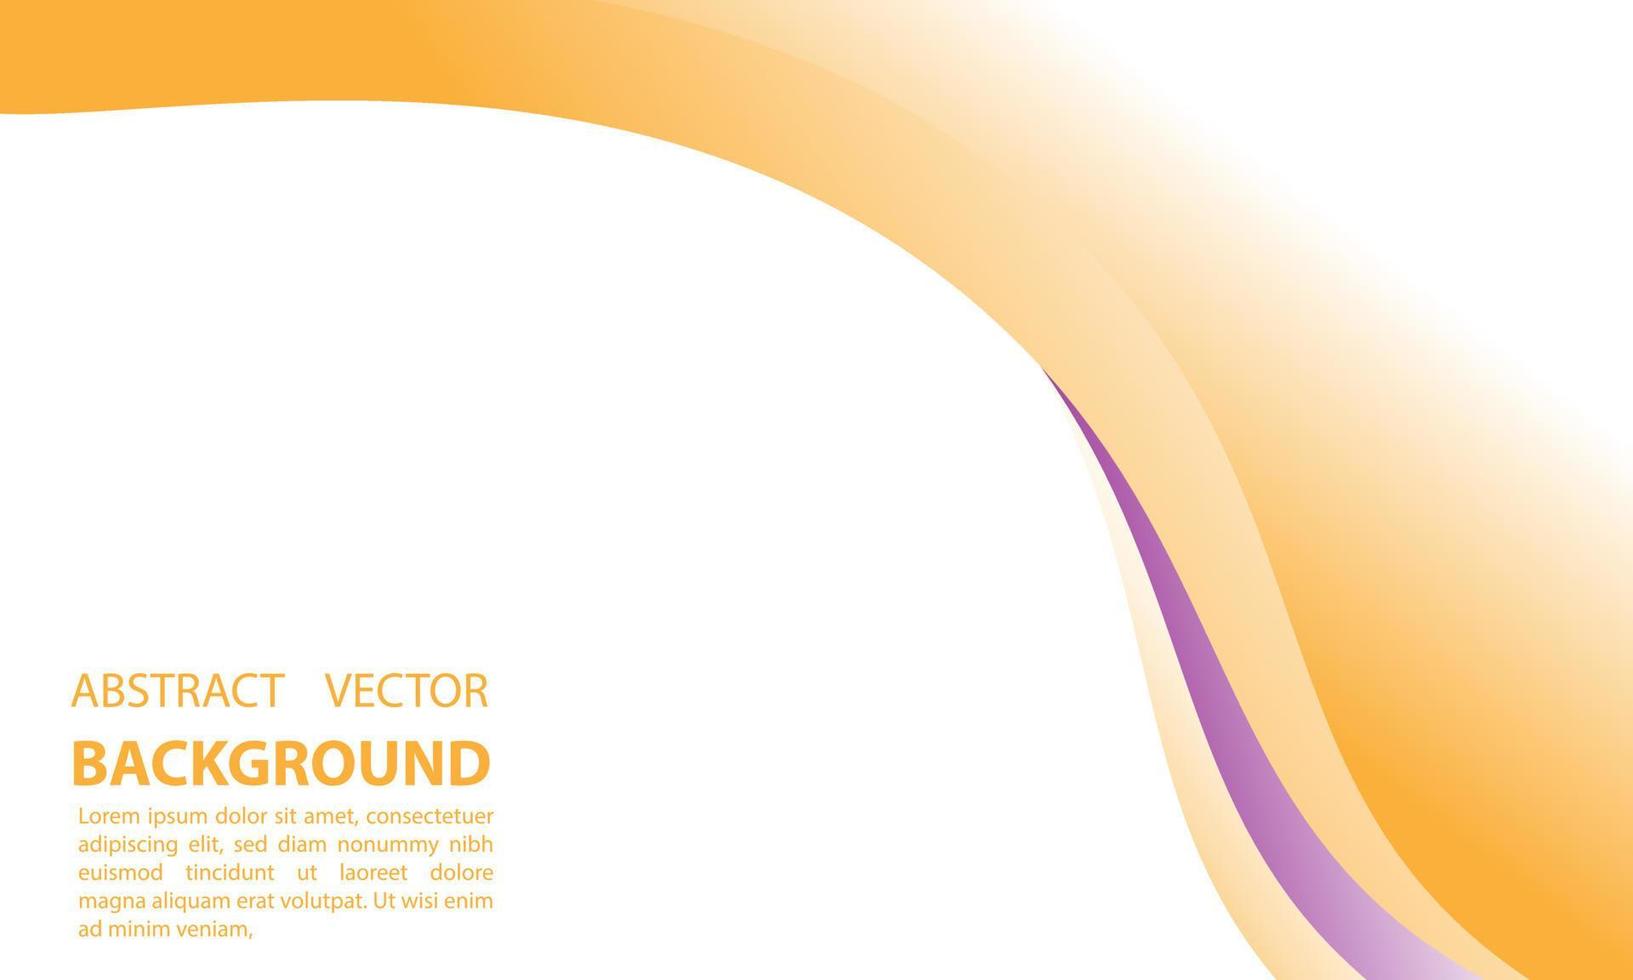 geometrischer abstrakter Hintergrund mit Farbverlauf orange, für Poster, Banner und andere, Vektordesign-Kopierraumbereich eps 10 vektor